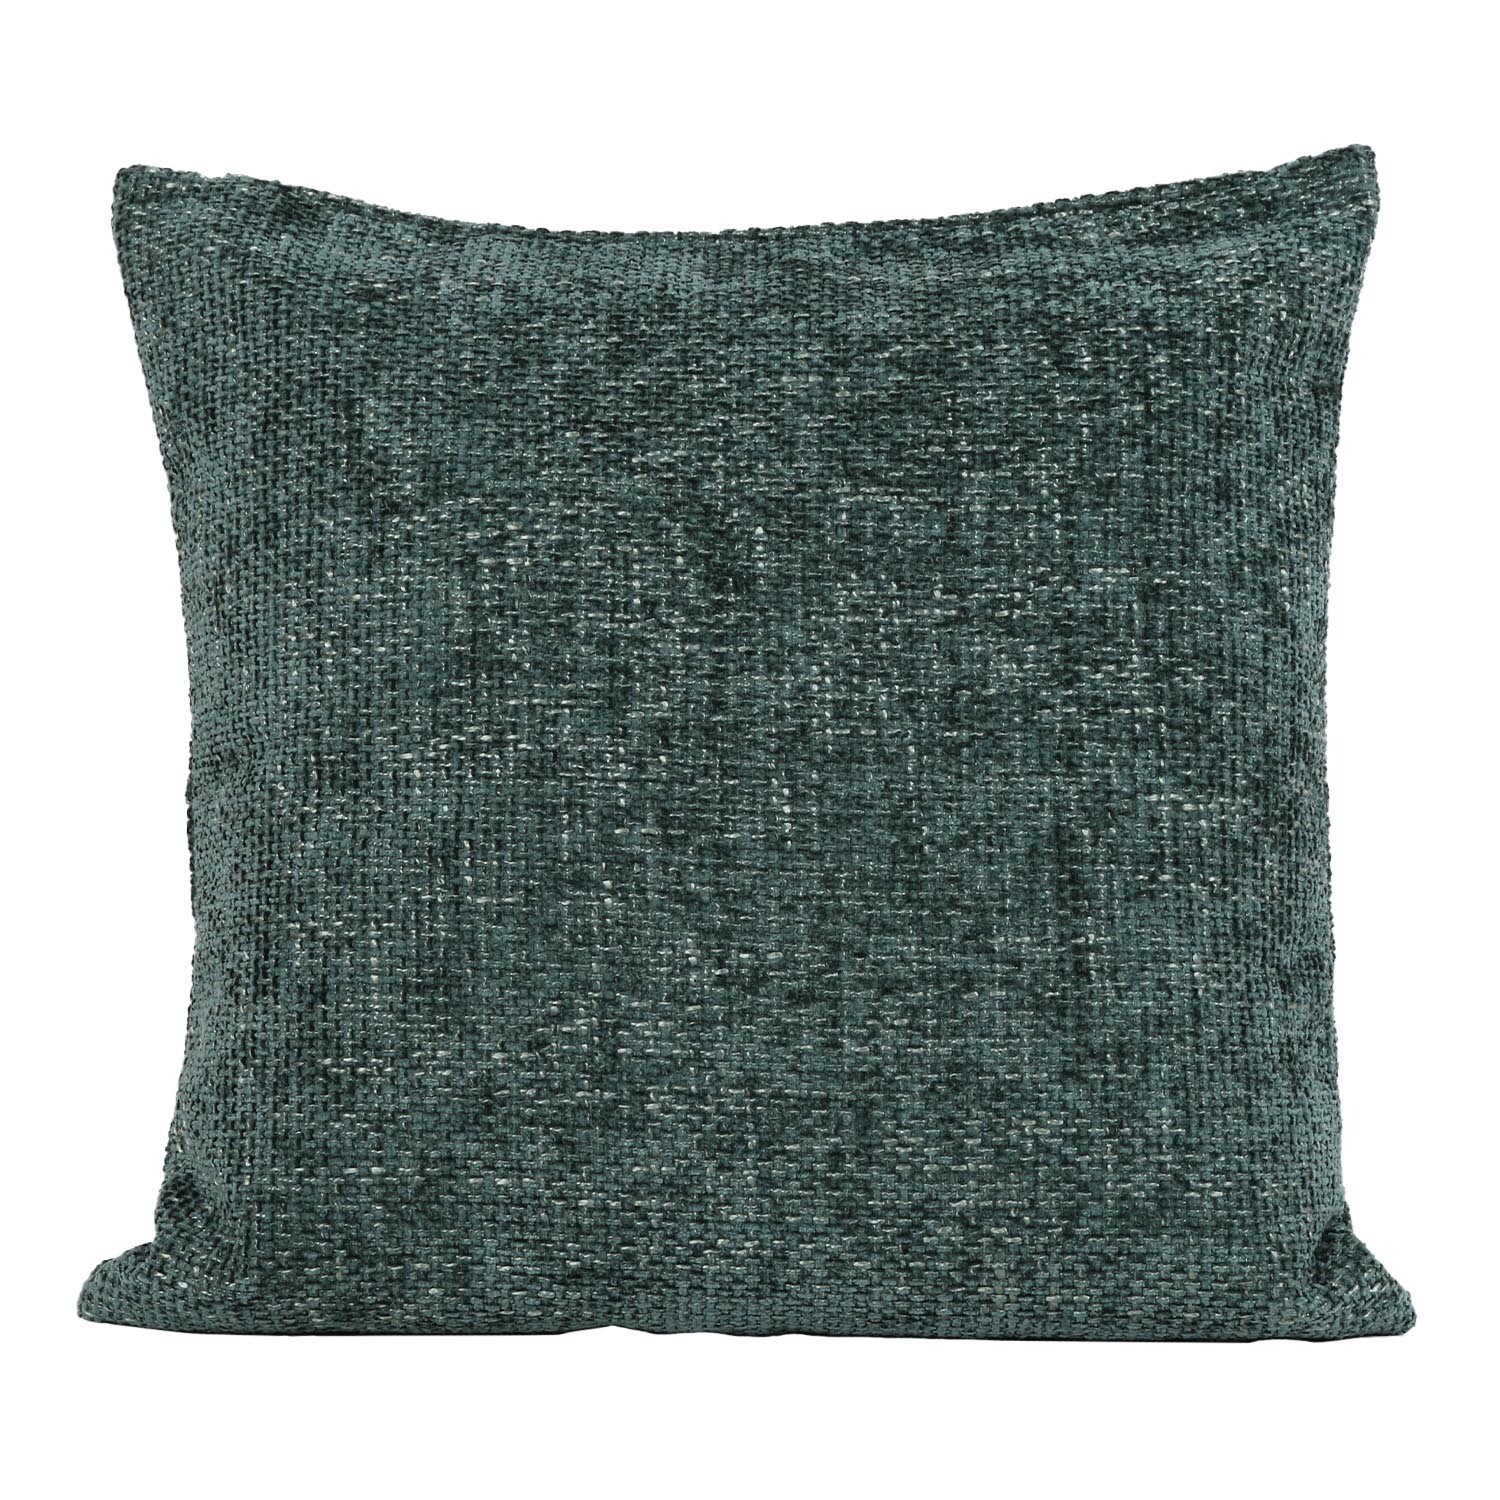 Divante Balham Forest Green Boucle Cushion 50 x 50cm Image